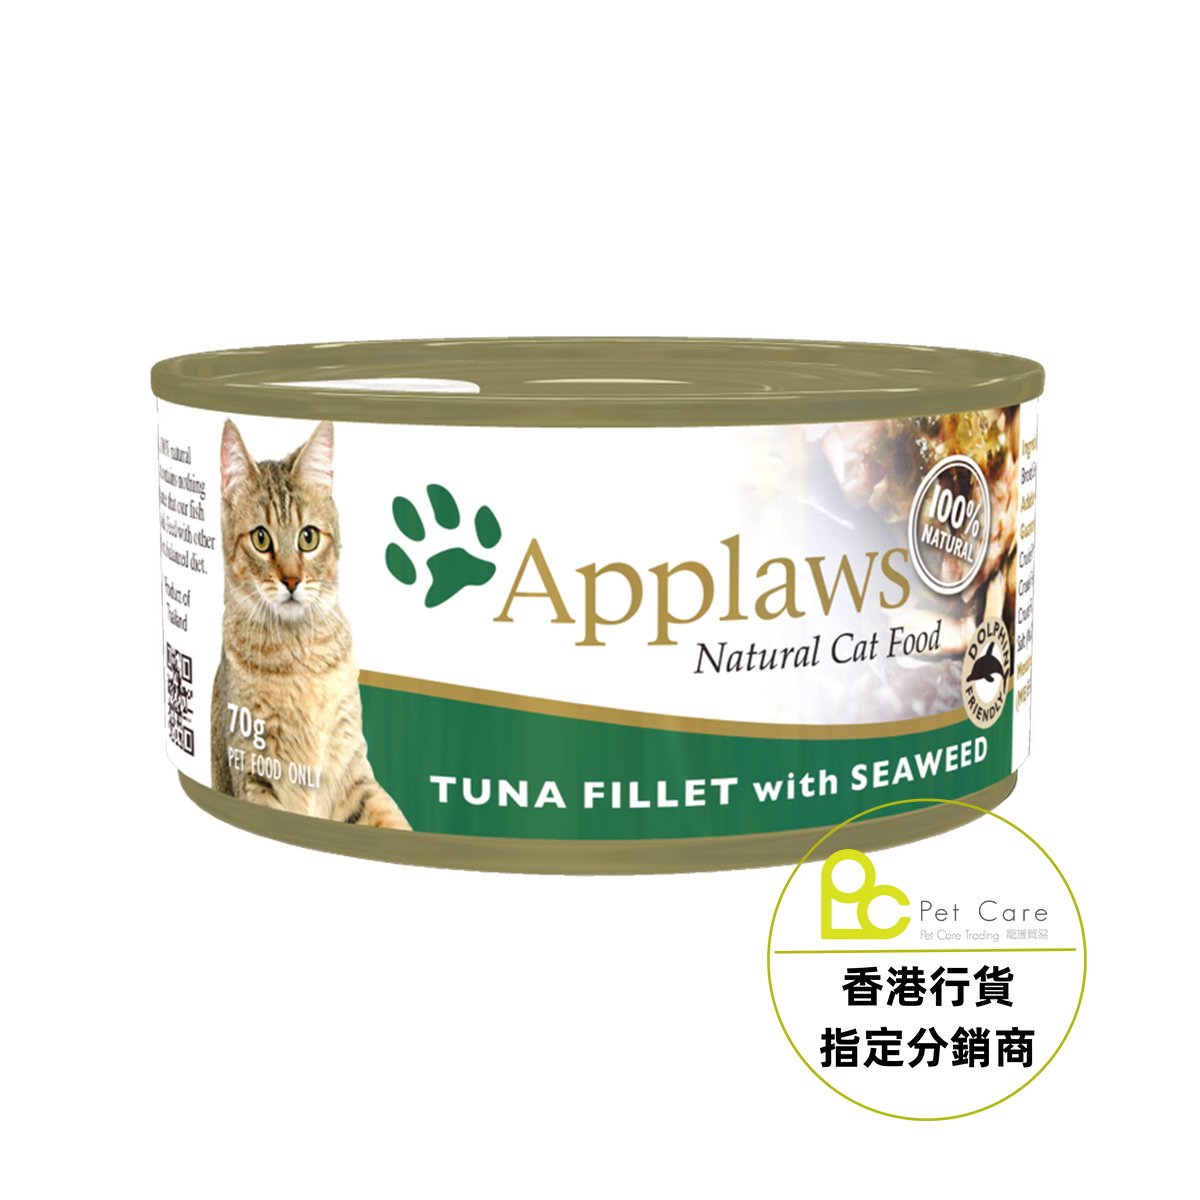 Applaws 全天然 貓罐頭 - 吞拿魚紫菜 70g (細)